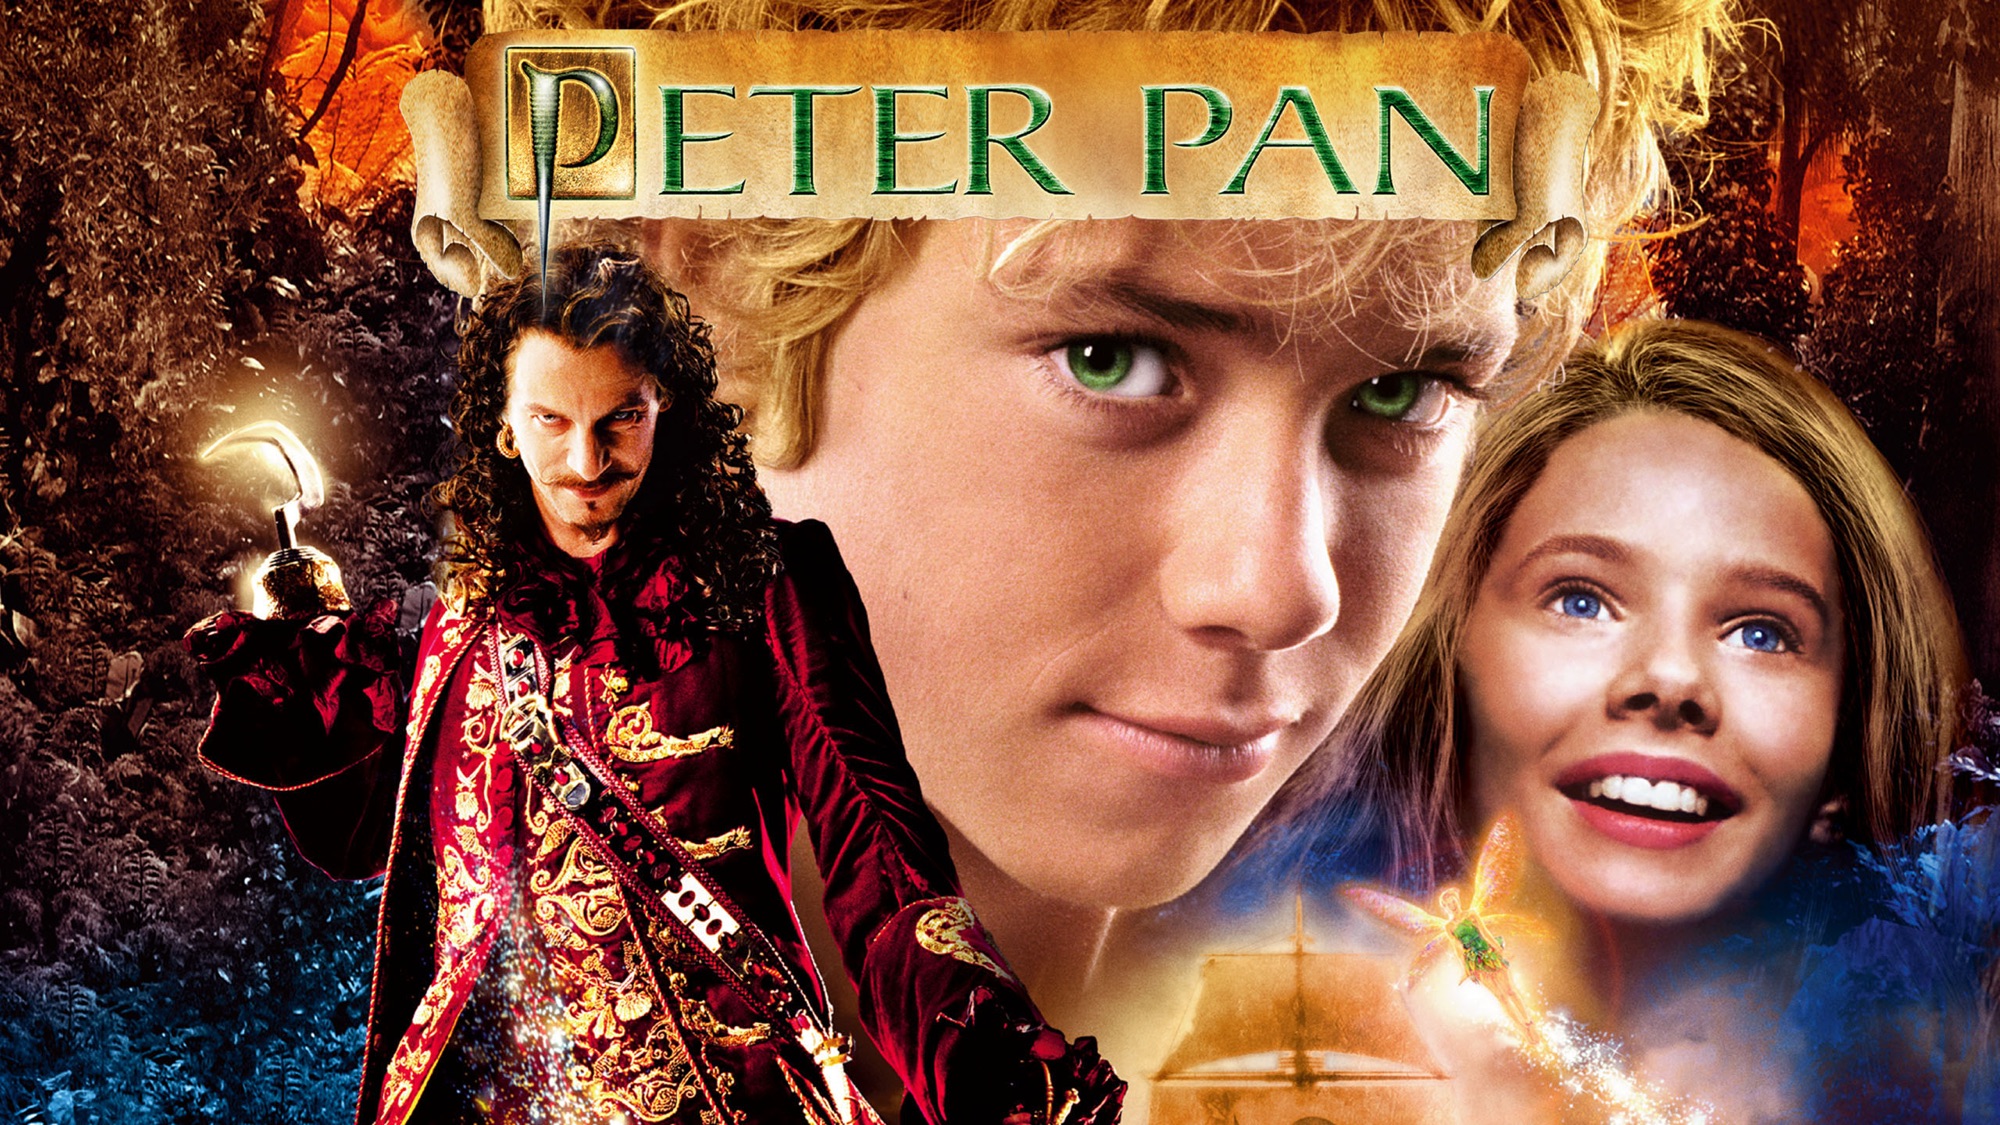 Melhores papéis de parede de Peter Pan (2003) para tela do telefone